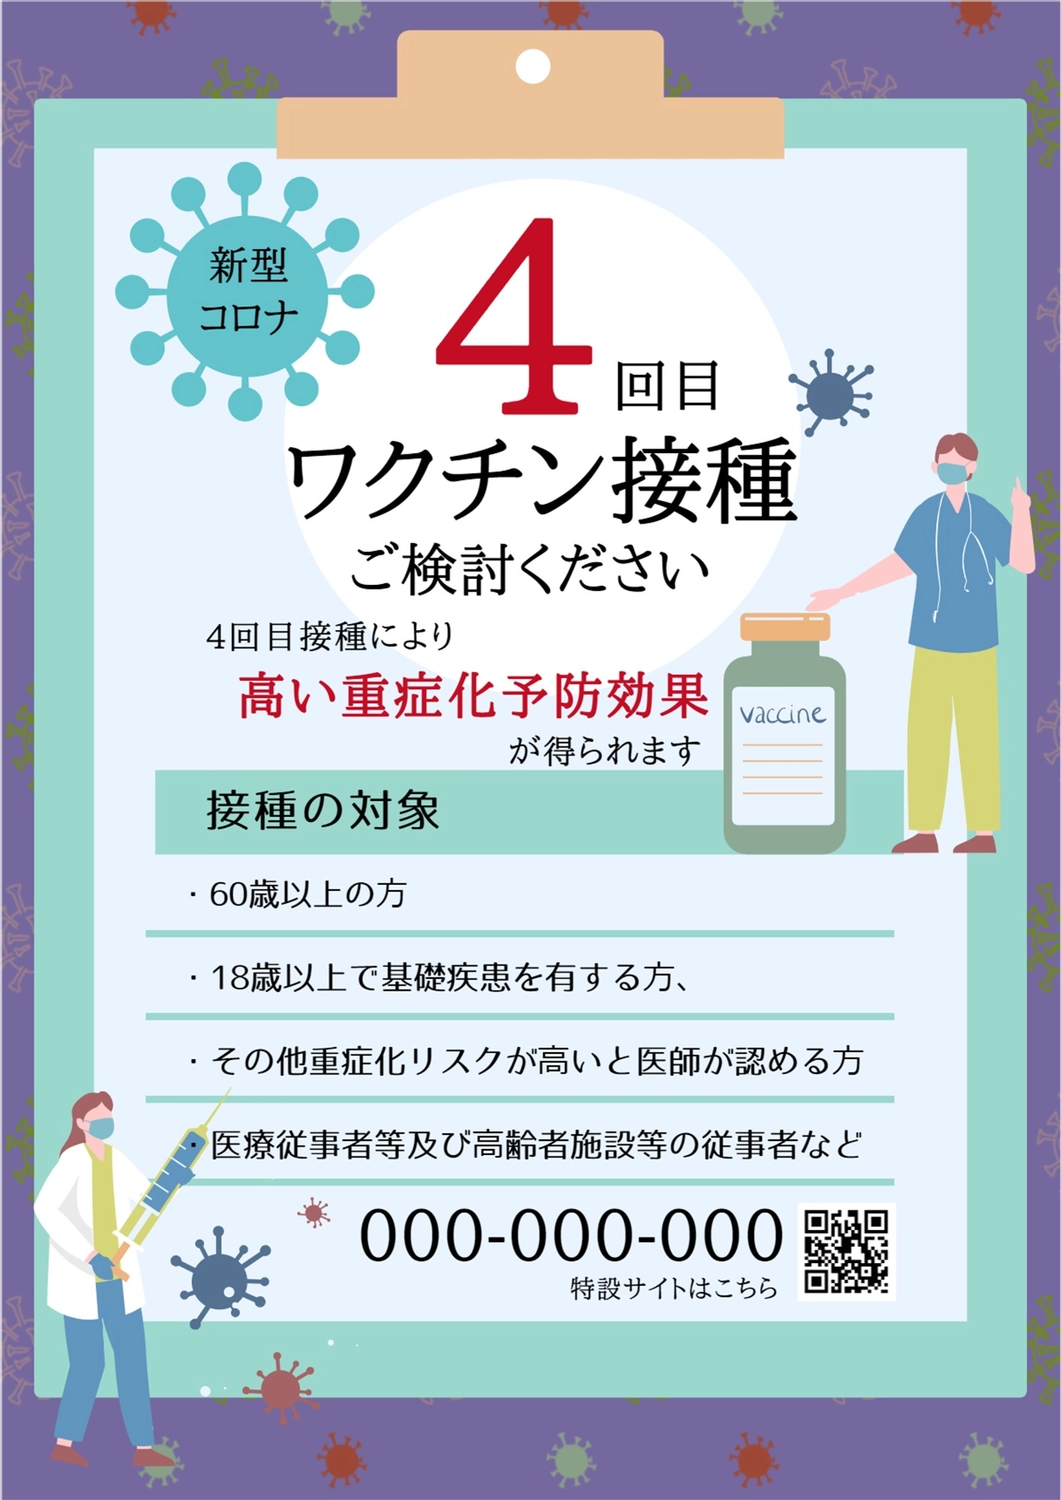 4回目ワクチン接種を推奨する紫と青と緑の掲示用ポスター

, injection, prevention, mask, Poster template